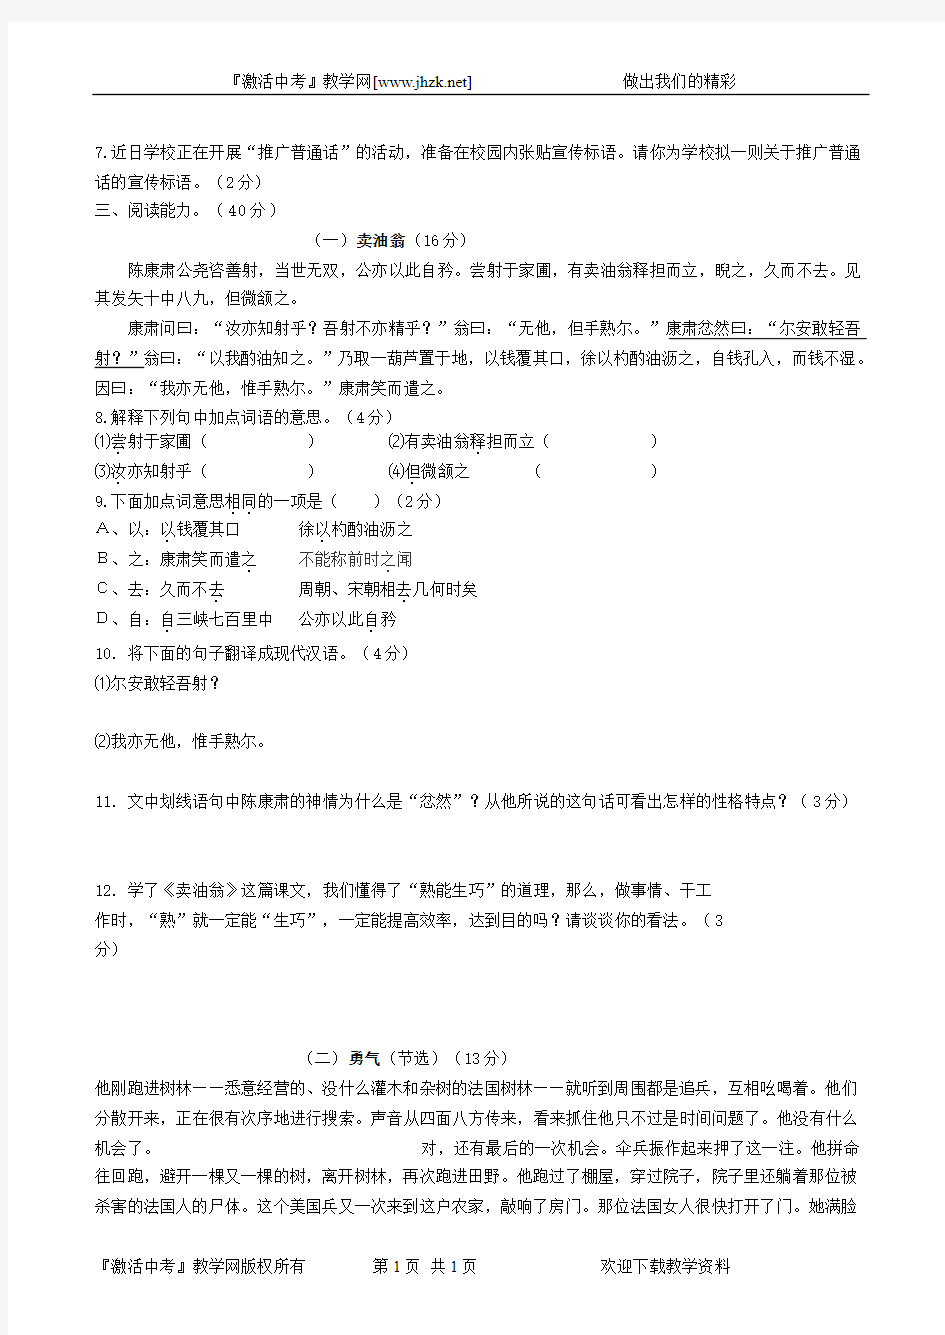 福建省漳州市2008—2009学年七年级上学期期末考试语文试卷